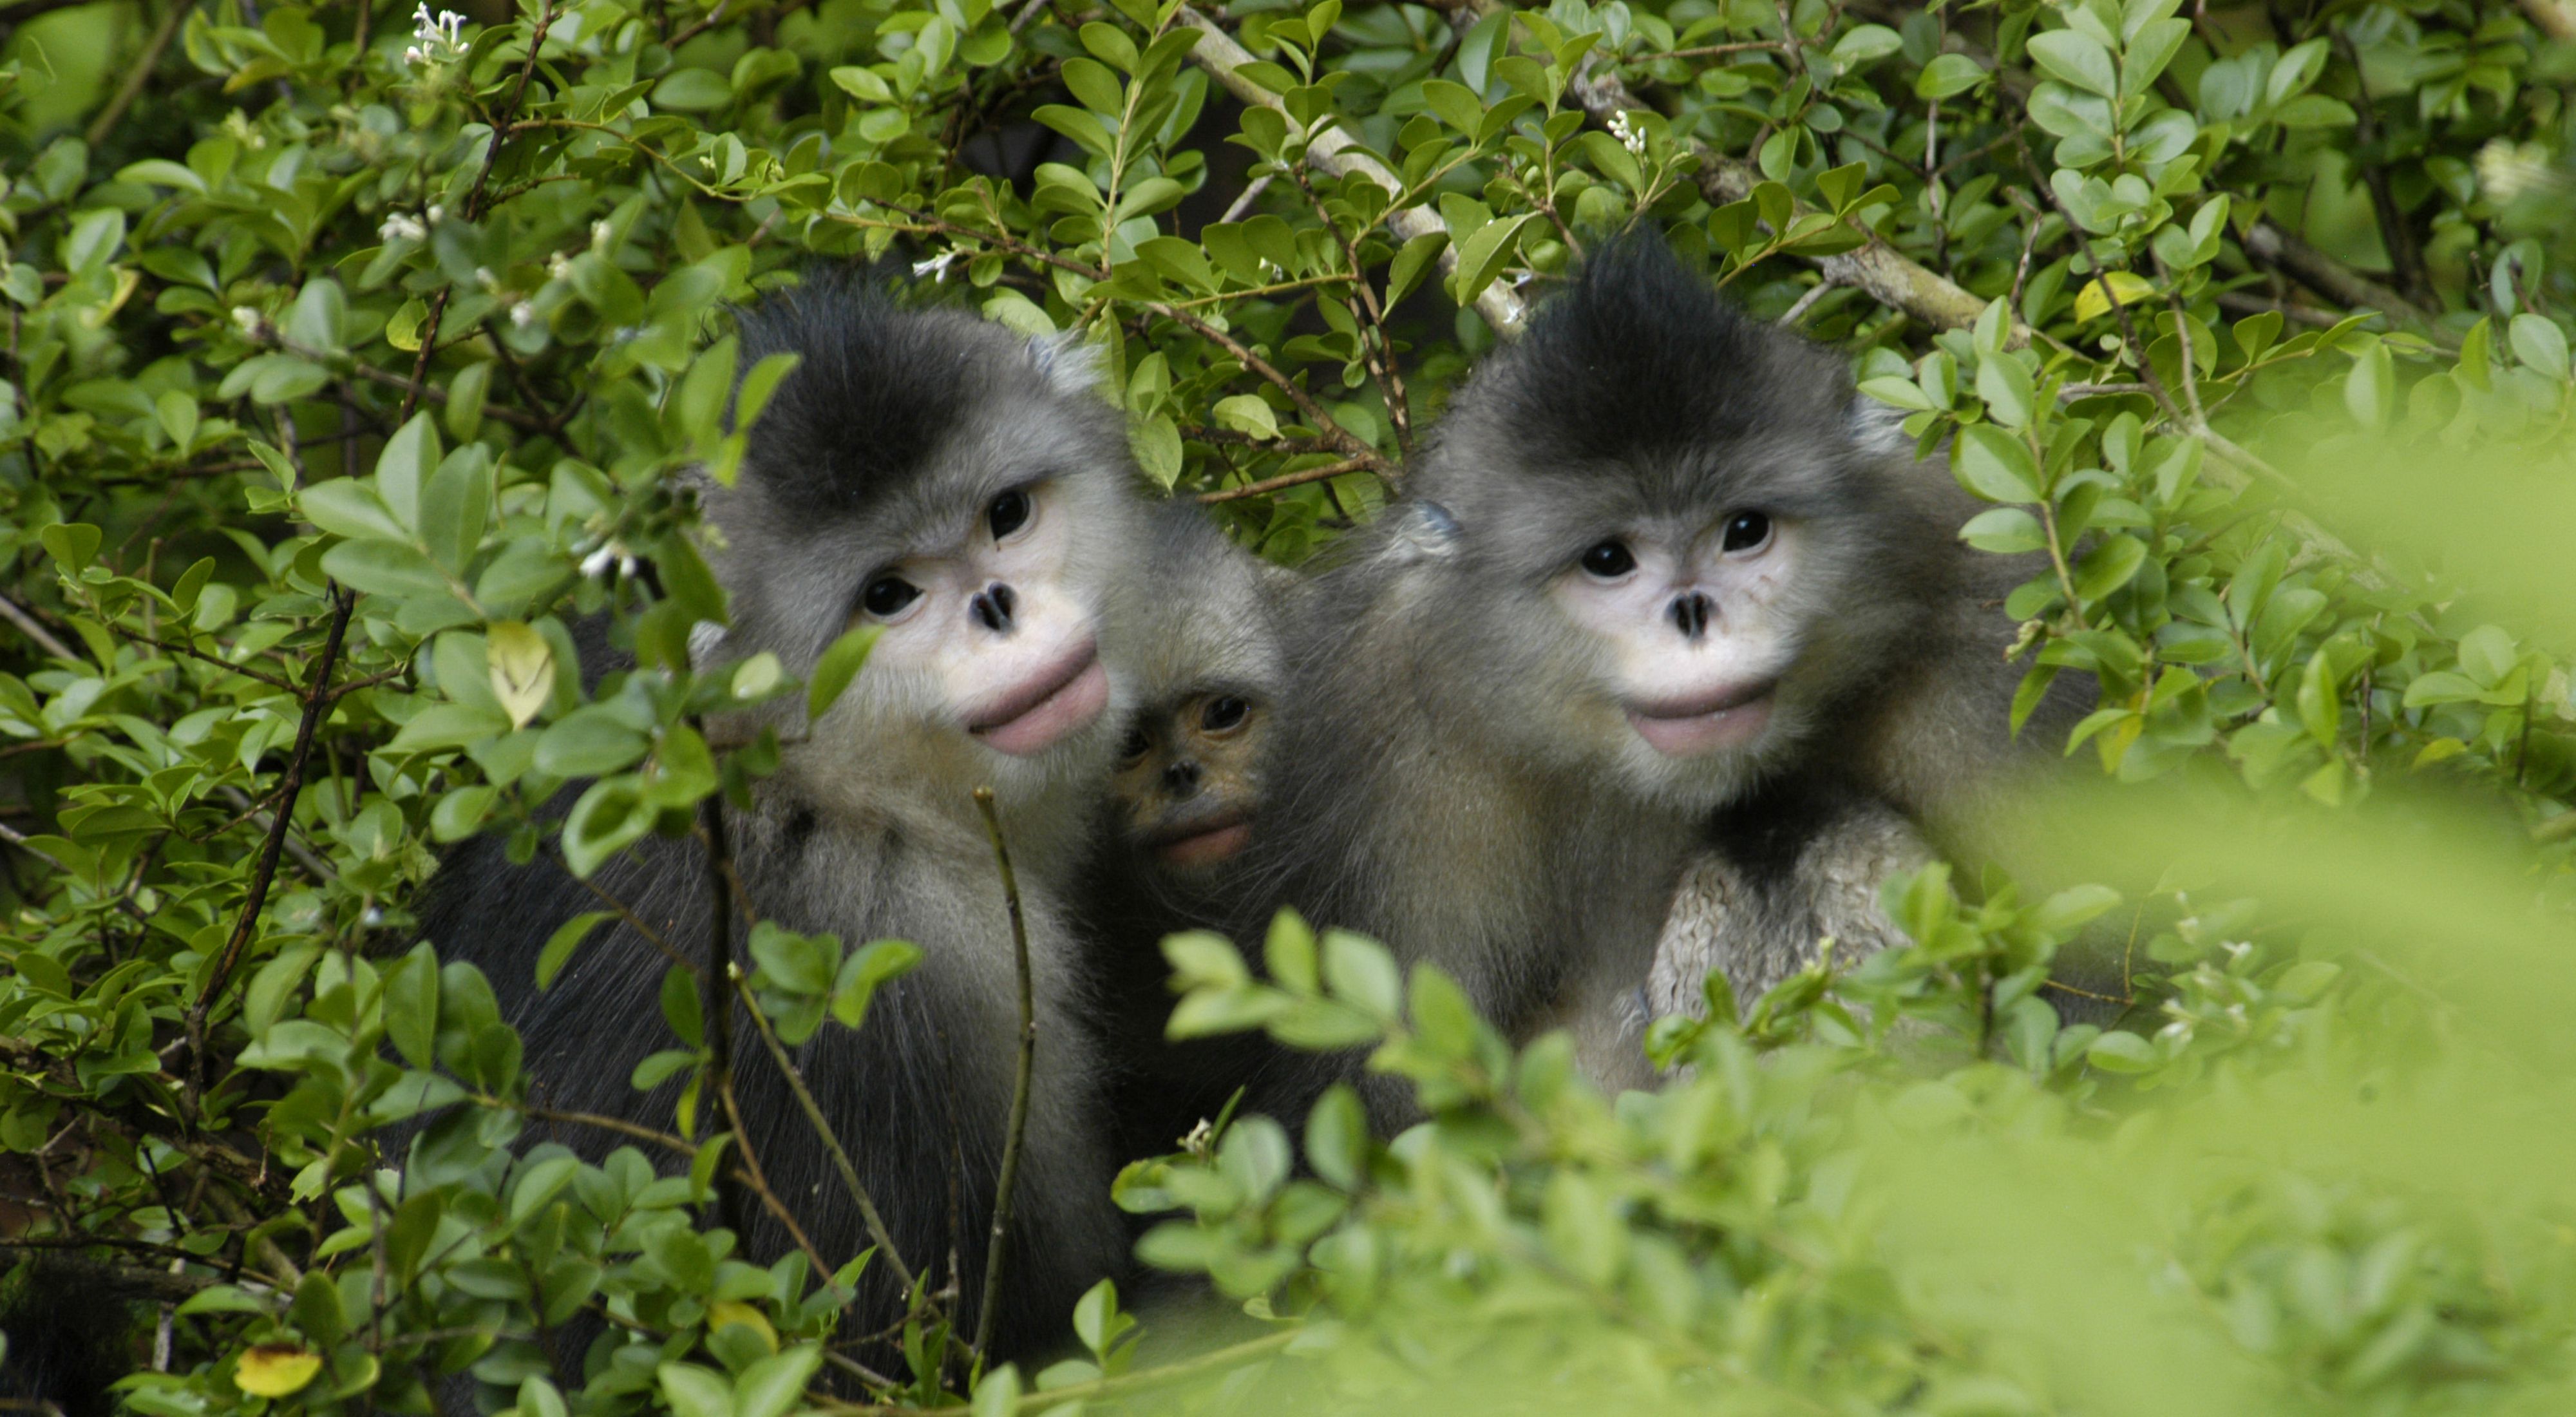 Tres pequeños monos blanco con negro se asoman desde los arbustos.